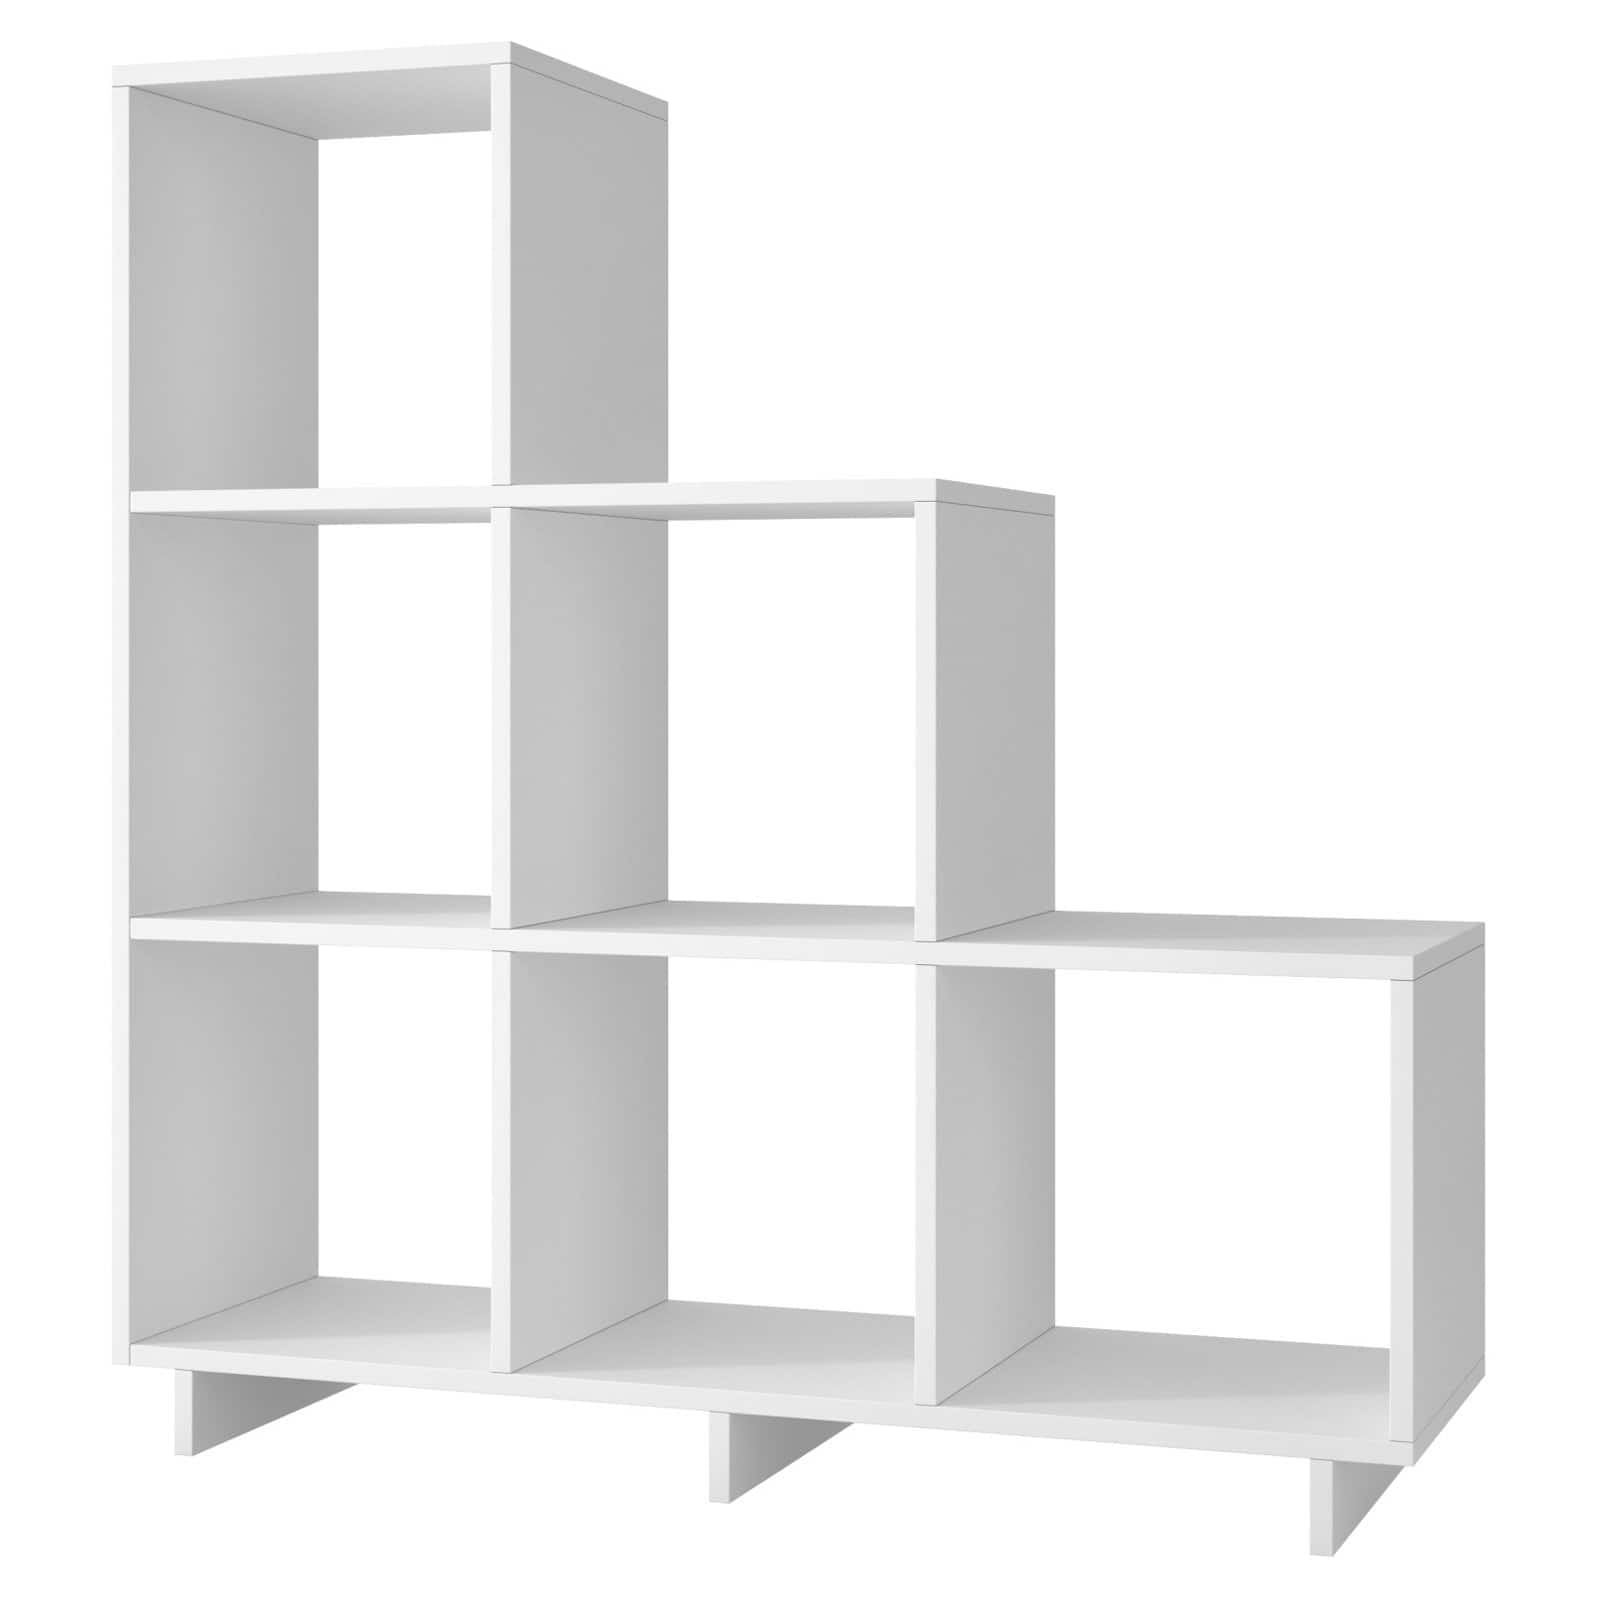 6 Cube Step Storage Bookshelf Unit Matt White